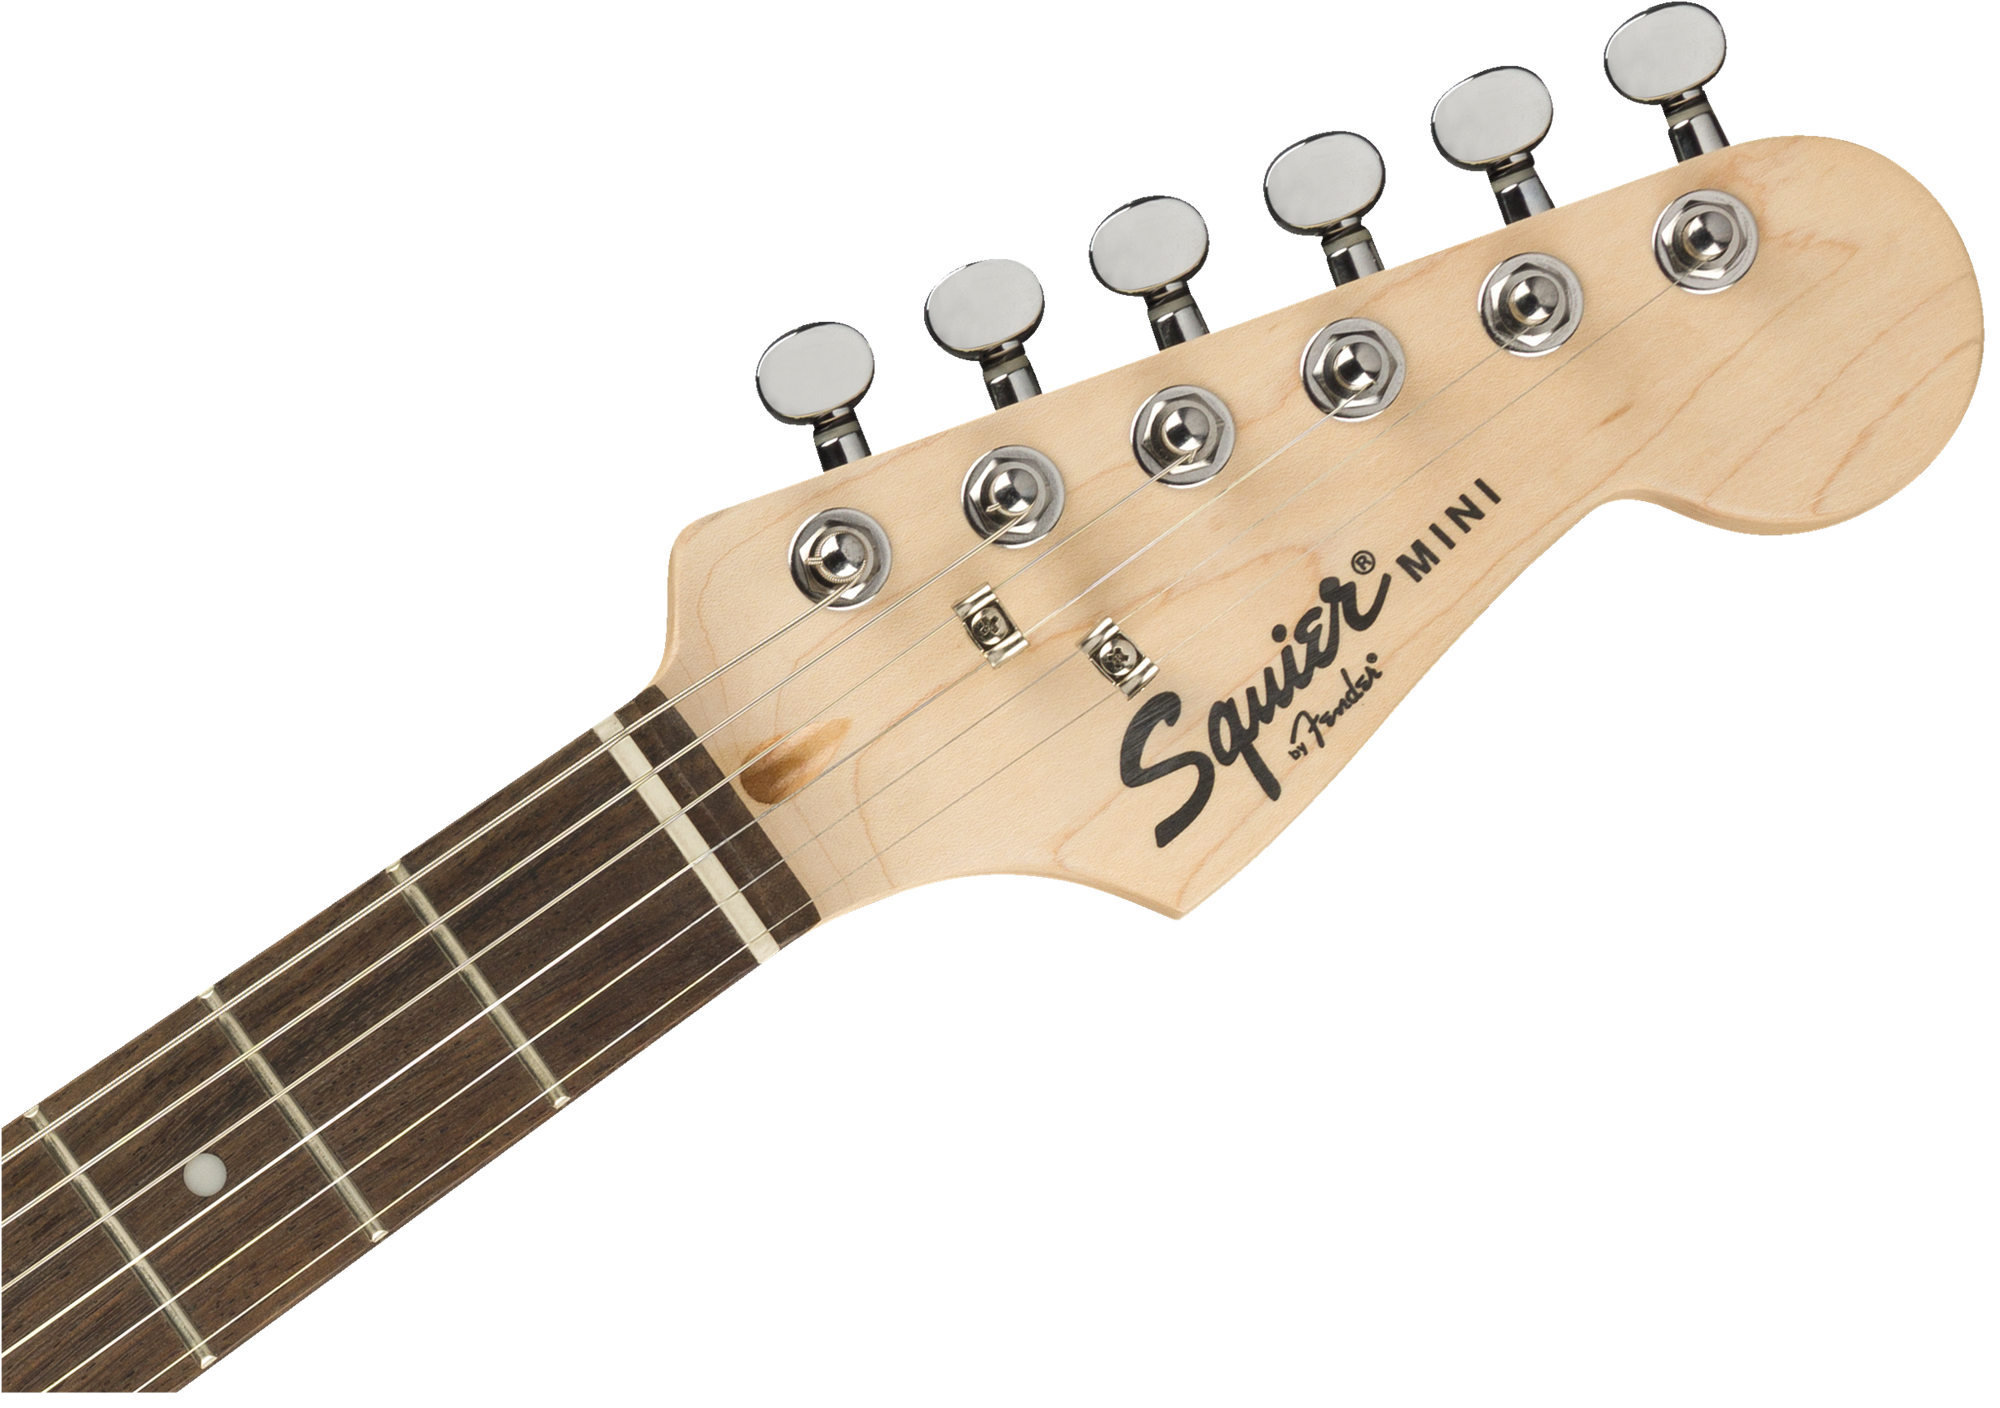 Squier Mini Stratocaster V2 Blk